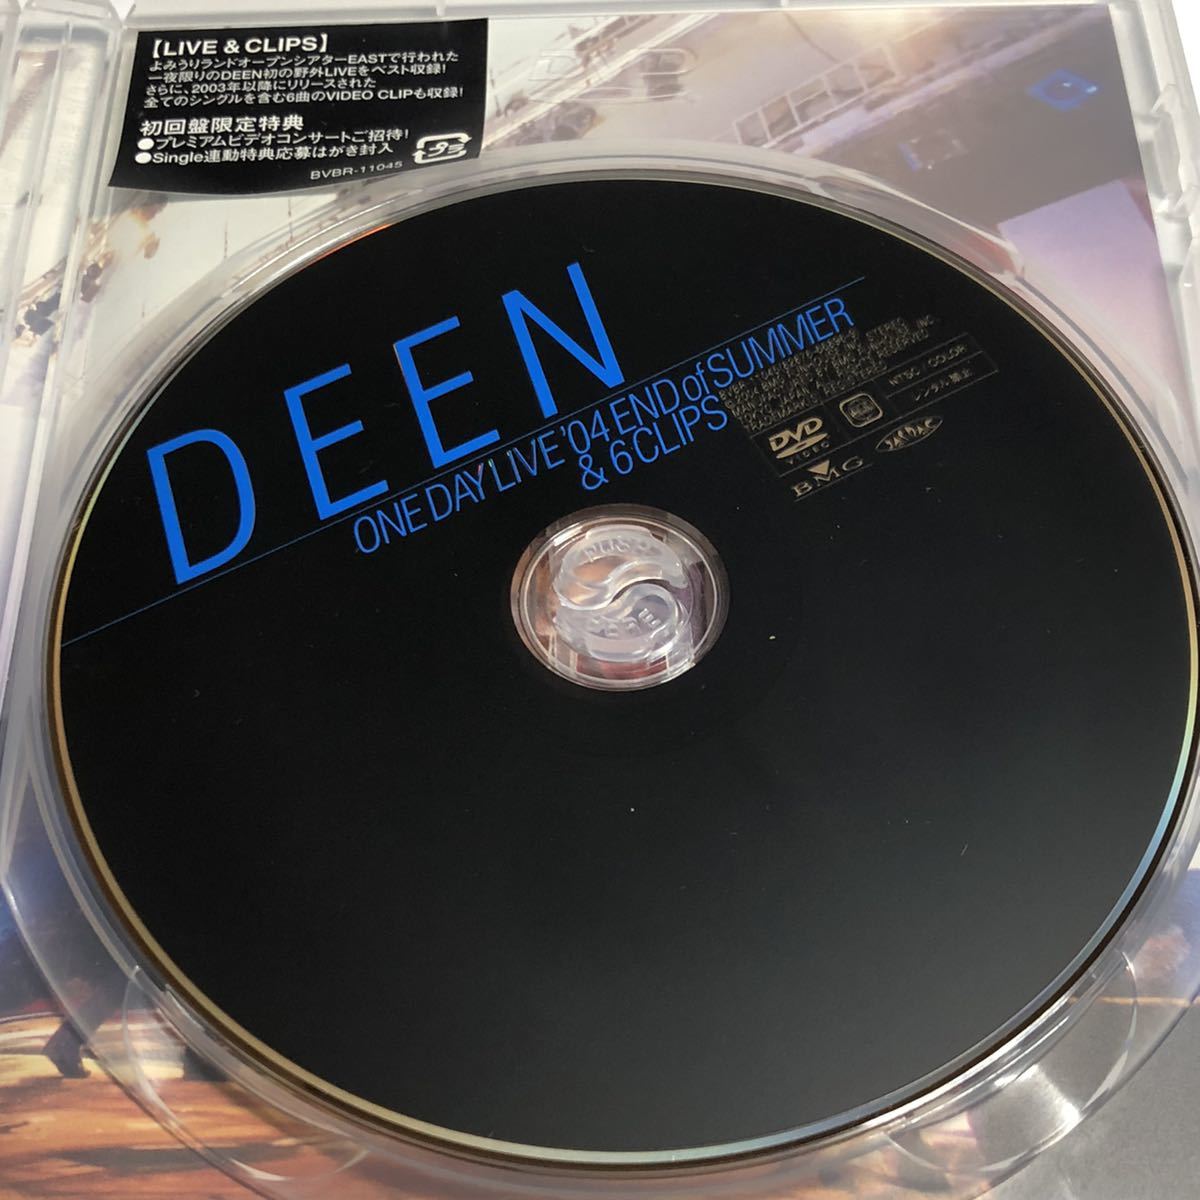 DVD DEEN ONEDAYLIVE'04ENDofSUMMER&6CLIPS BVBR-11045 邦楽 日本 音楽 人気 レア 希少 廃盤 絶版_画像7